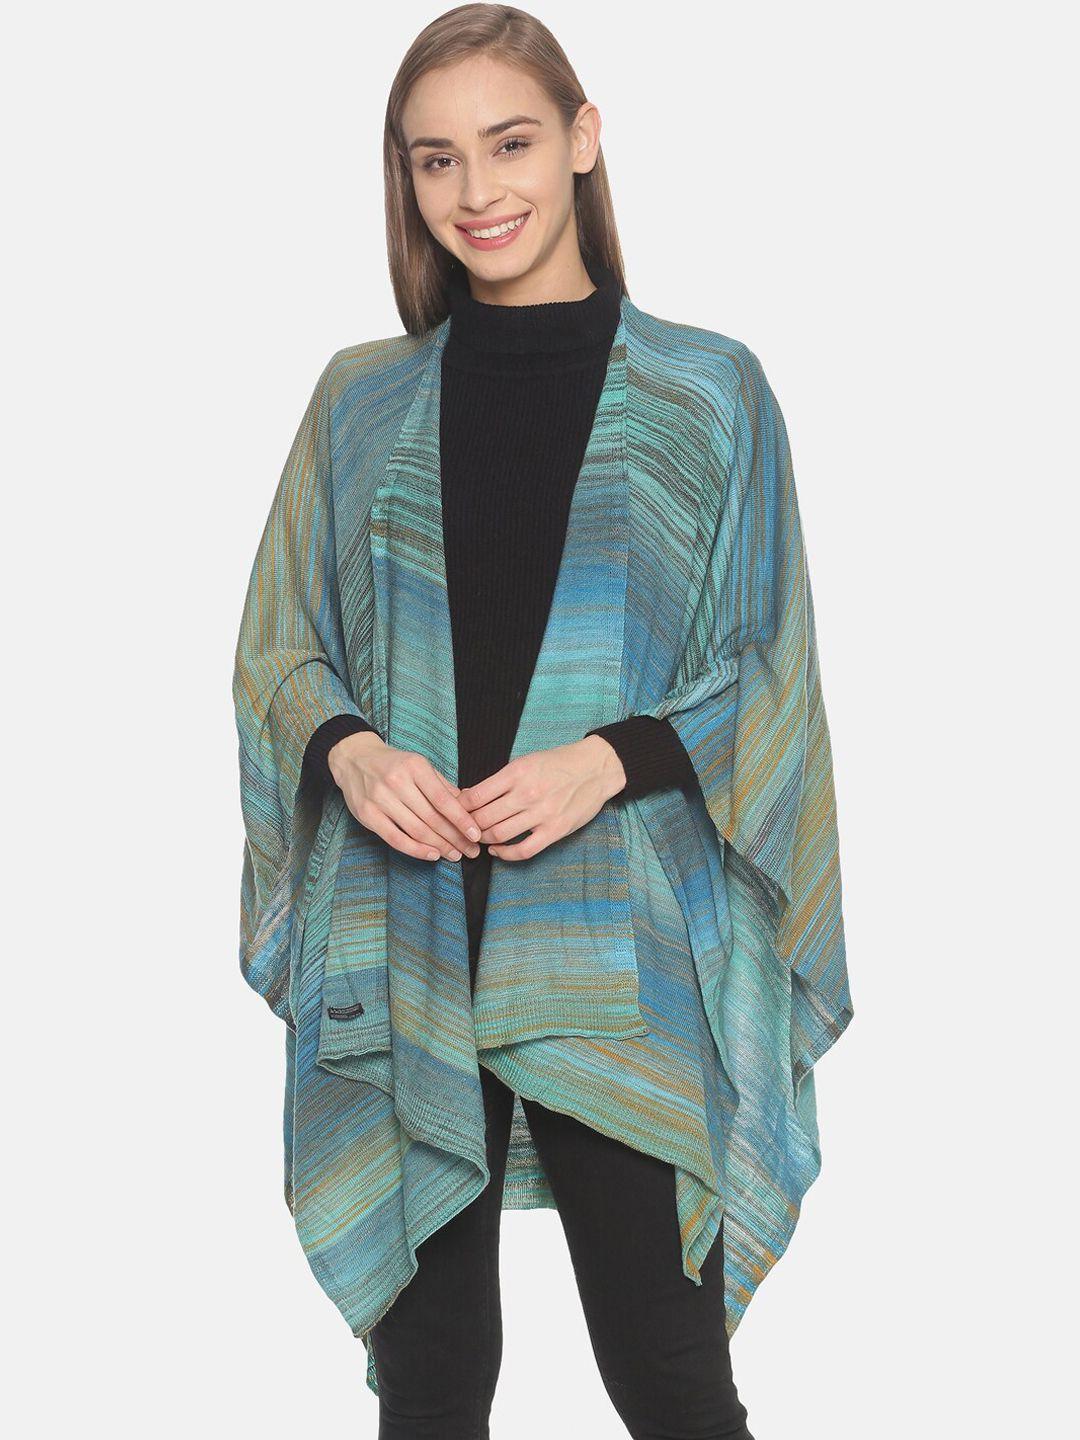 513 women blue & brown striped kimono shrug